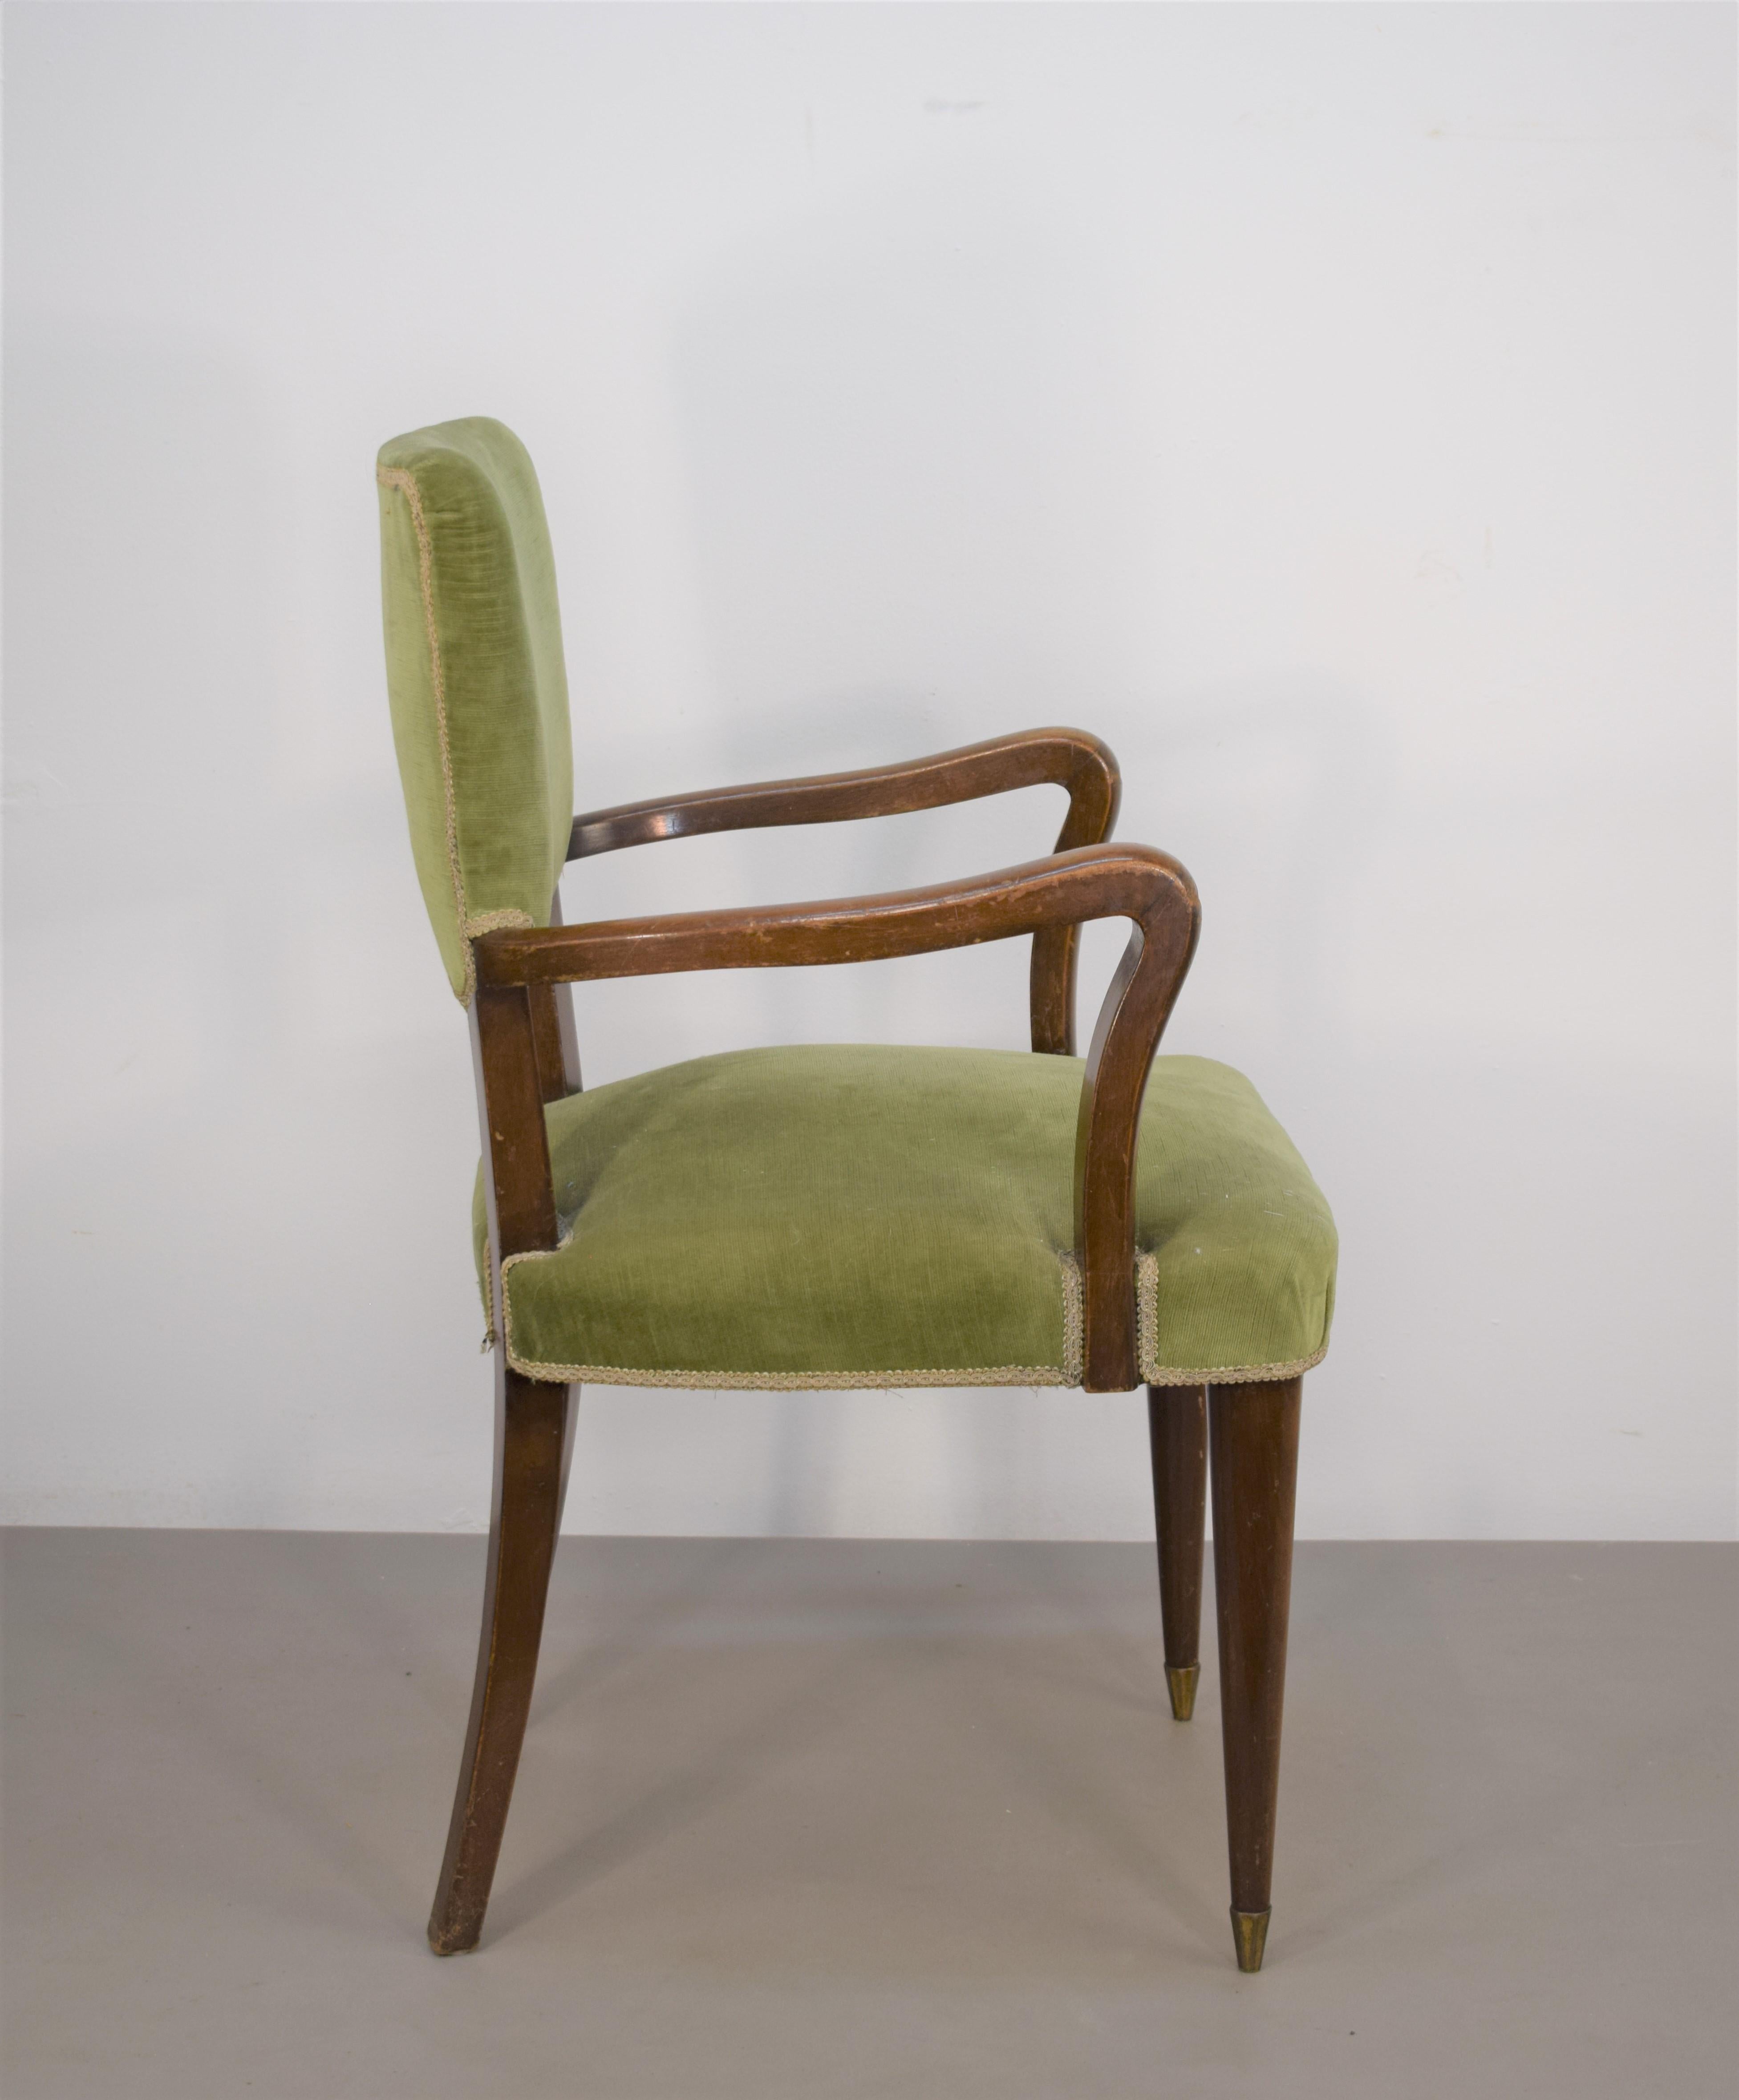 Italienischer Sessel, 1950er Jahre.
Abmessungen: H= 91 cm; B= 58 cm; T= 50 cm; H Sitz= 48 cm.